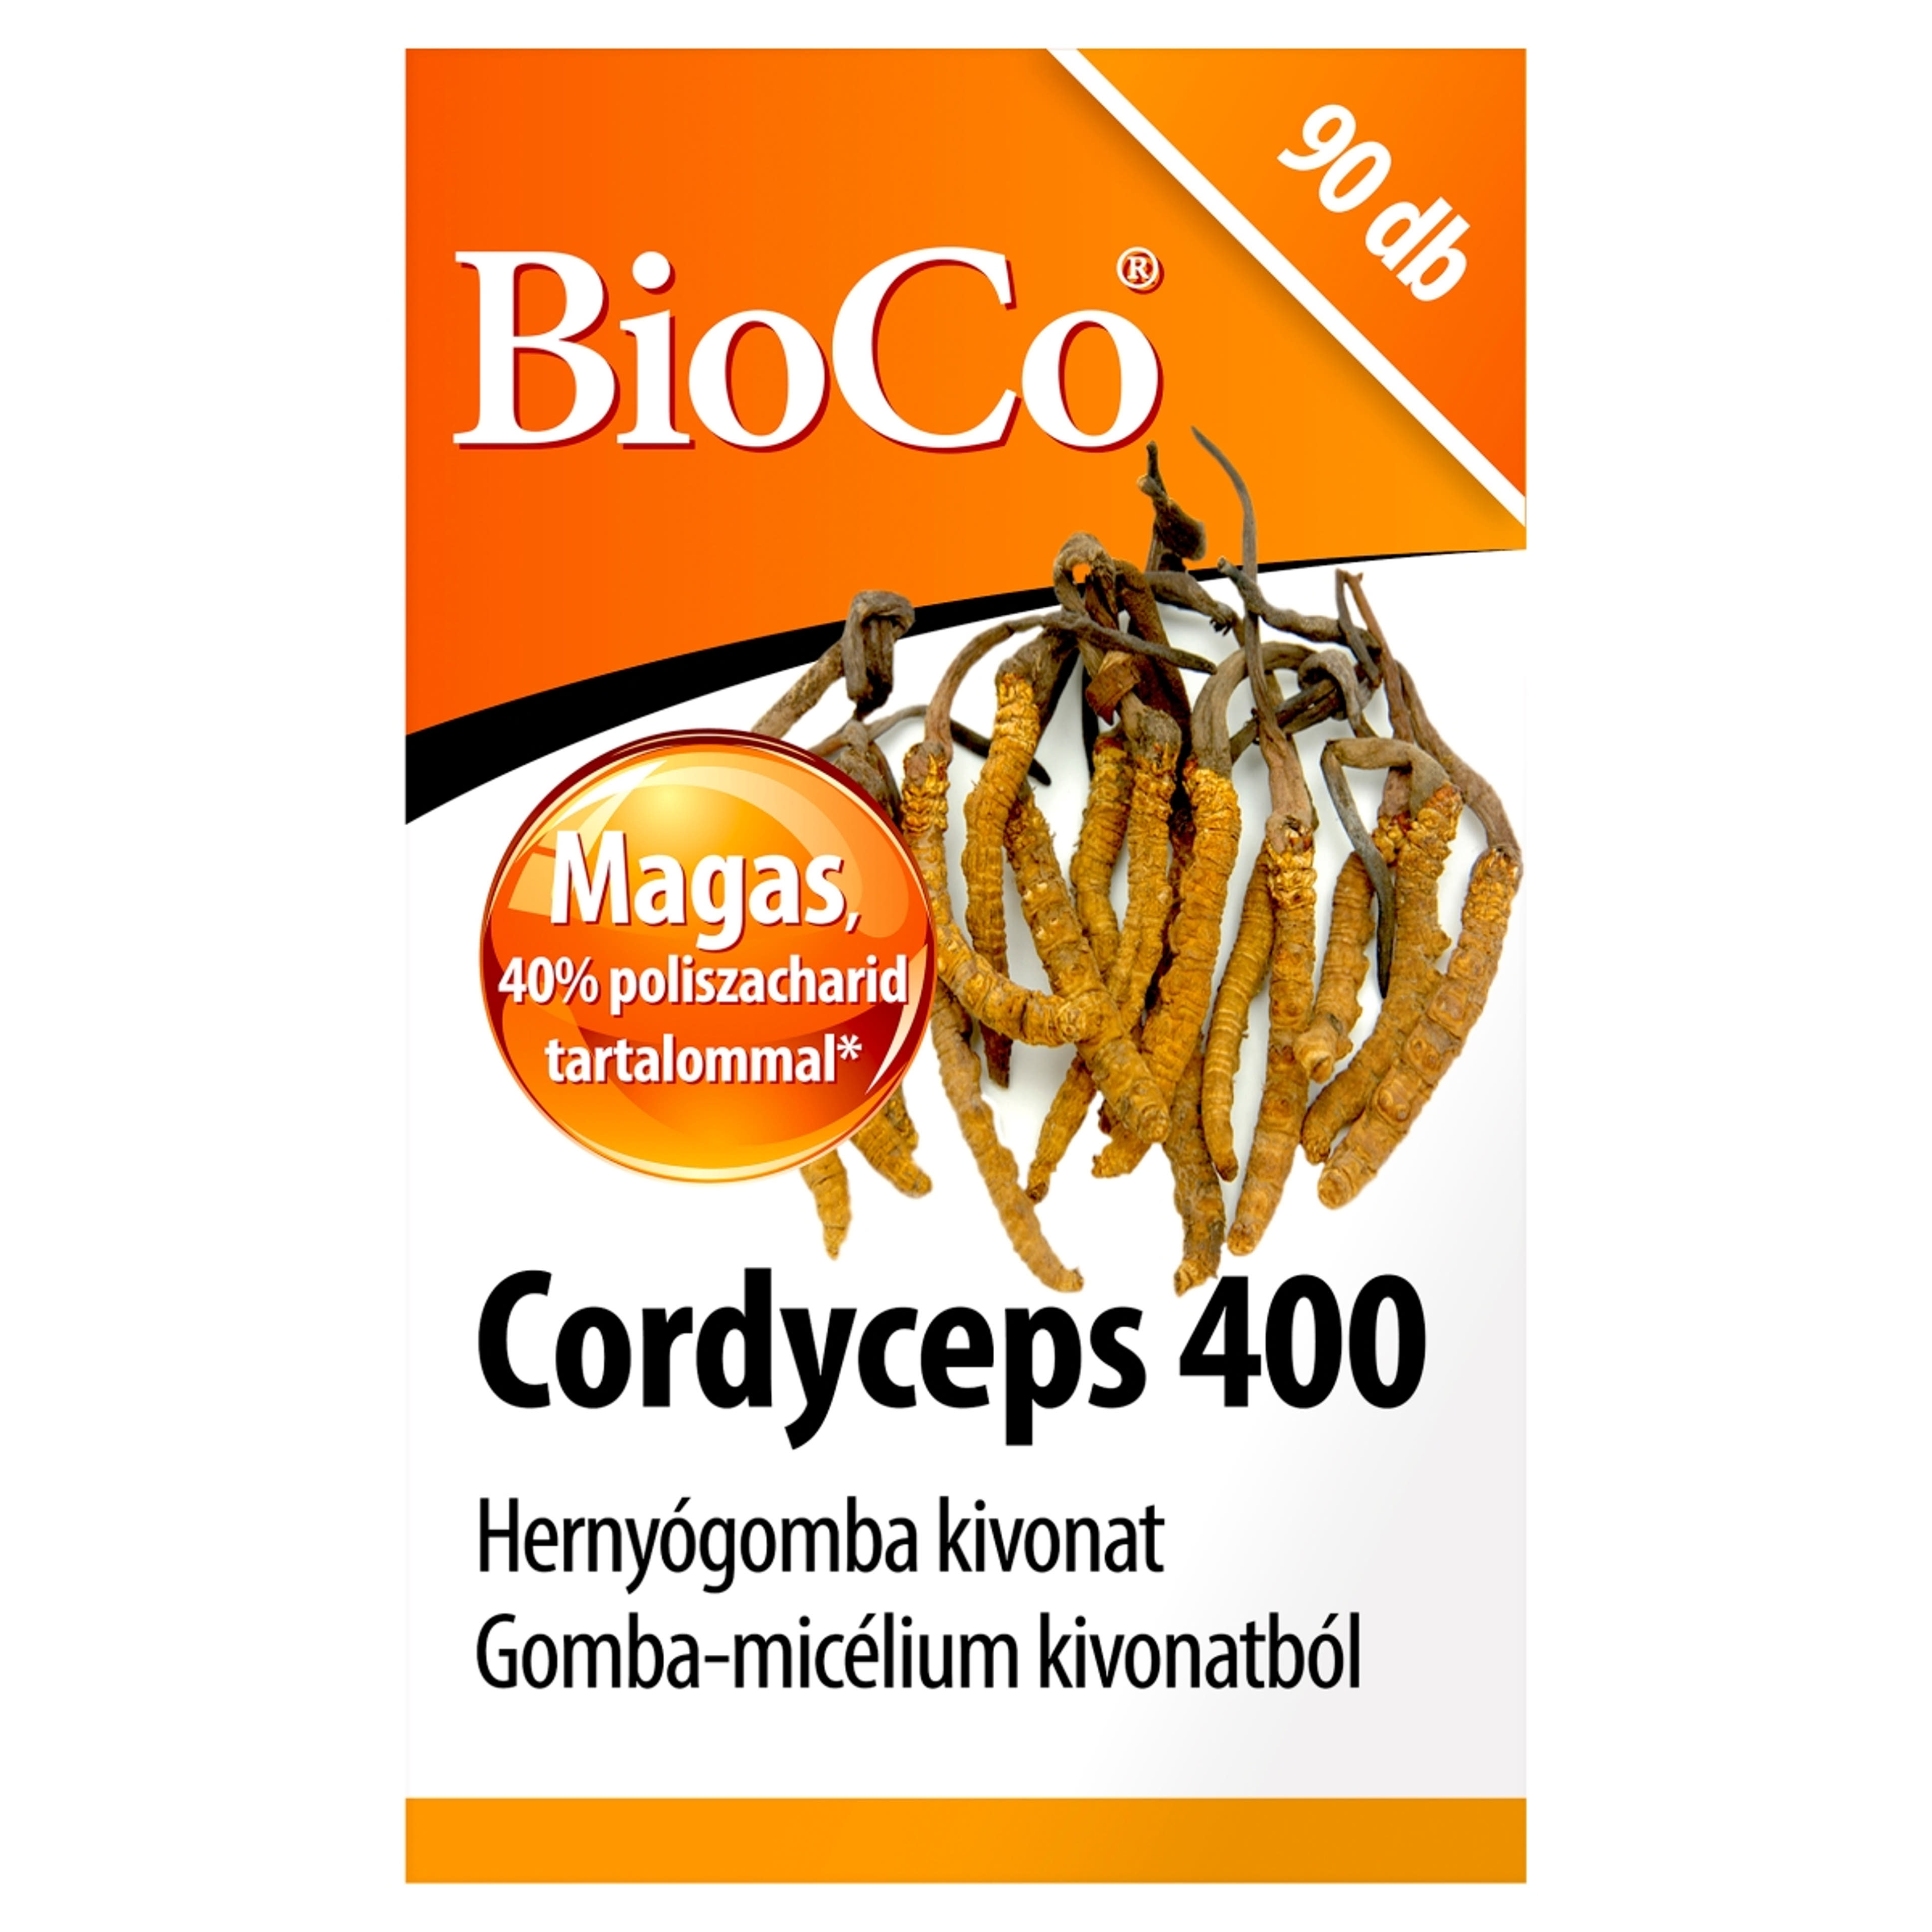 Bioco cordyceps 400 étrendkiegészítő tabletta hernyógombával - 90 db-1